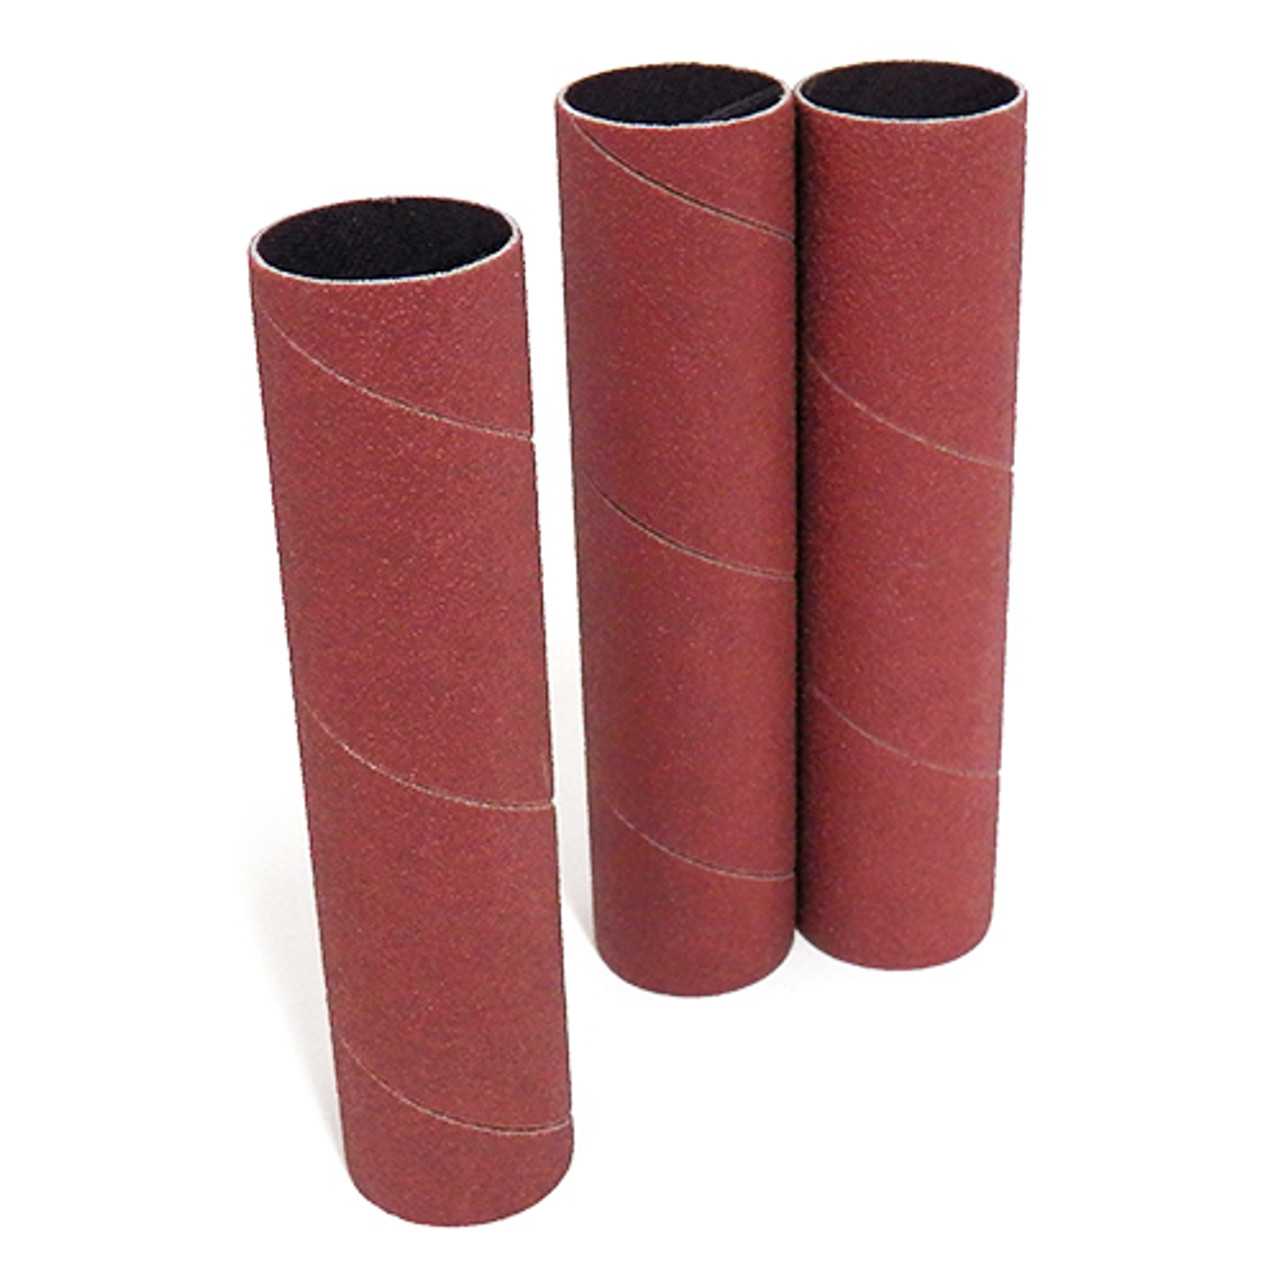 Klingspor Abrasives Aluminum Oxide Sanding Sleeves, 1"X 4-1/2" 100 Grit, 3pk